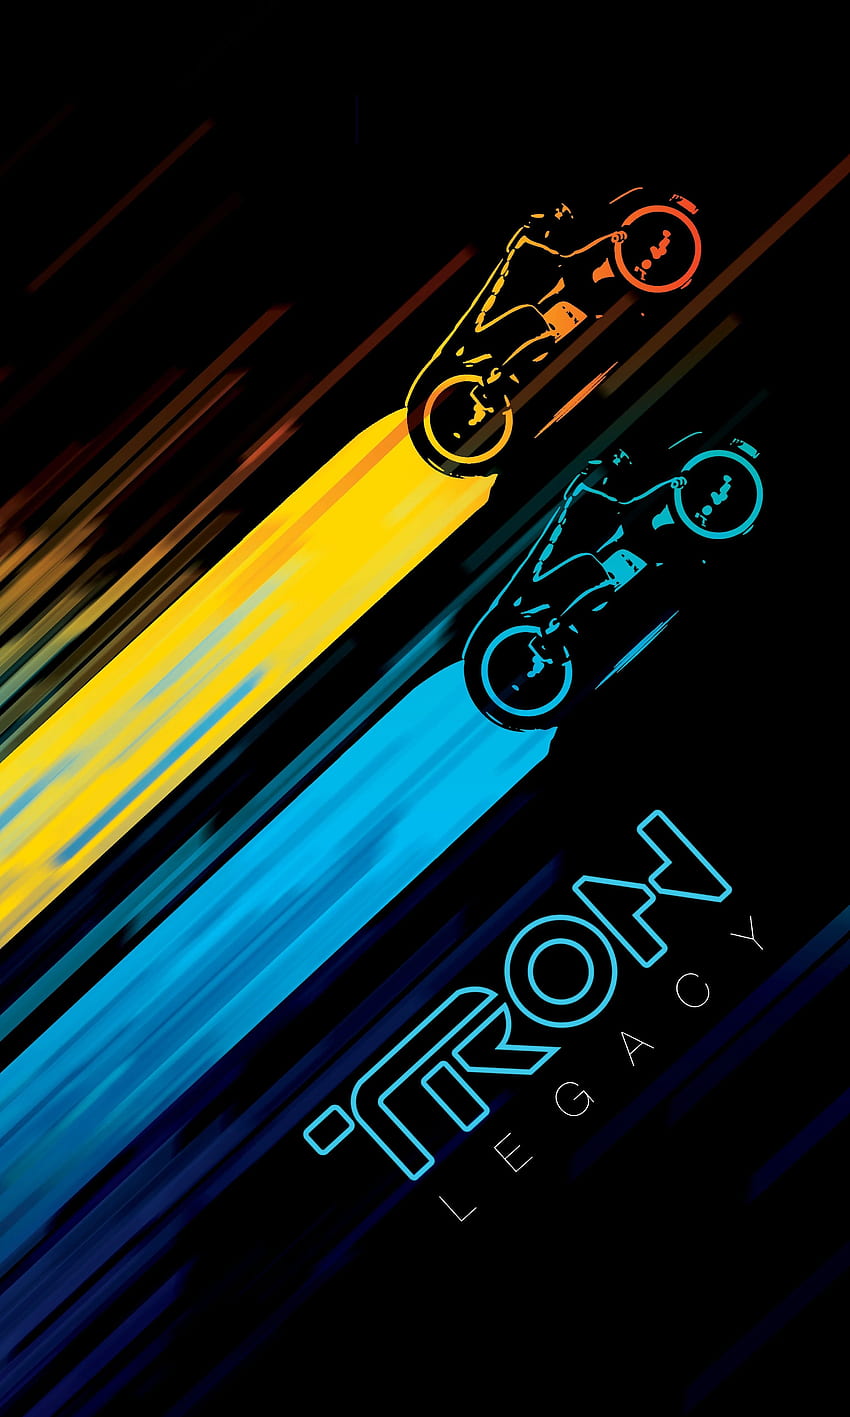 fond d'écran gratuit. Tron art, Tron, Tron legacy, Tron iPhone HD phone wallpaper